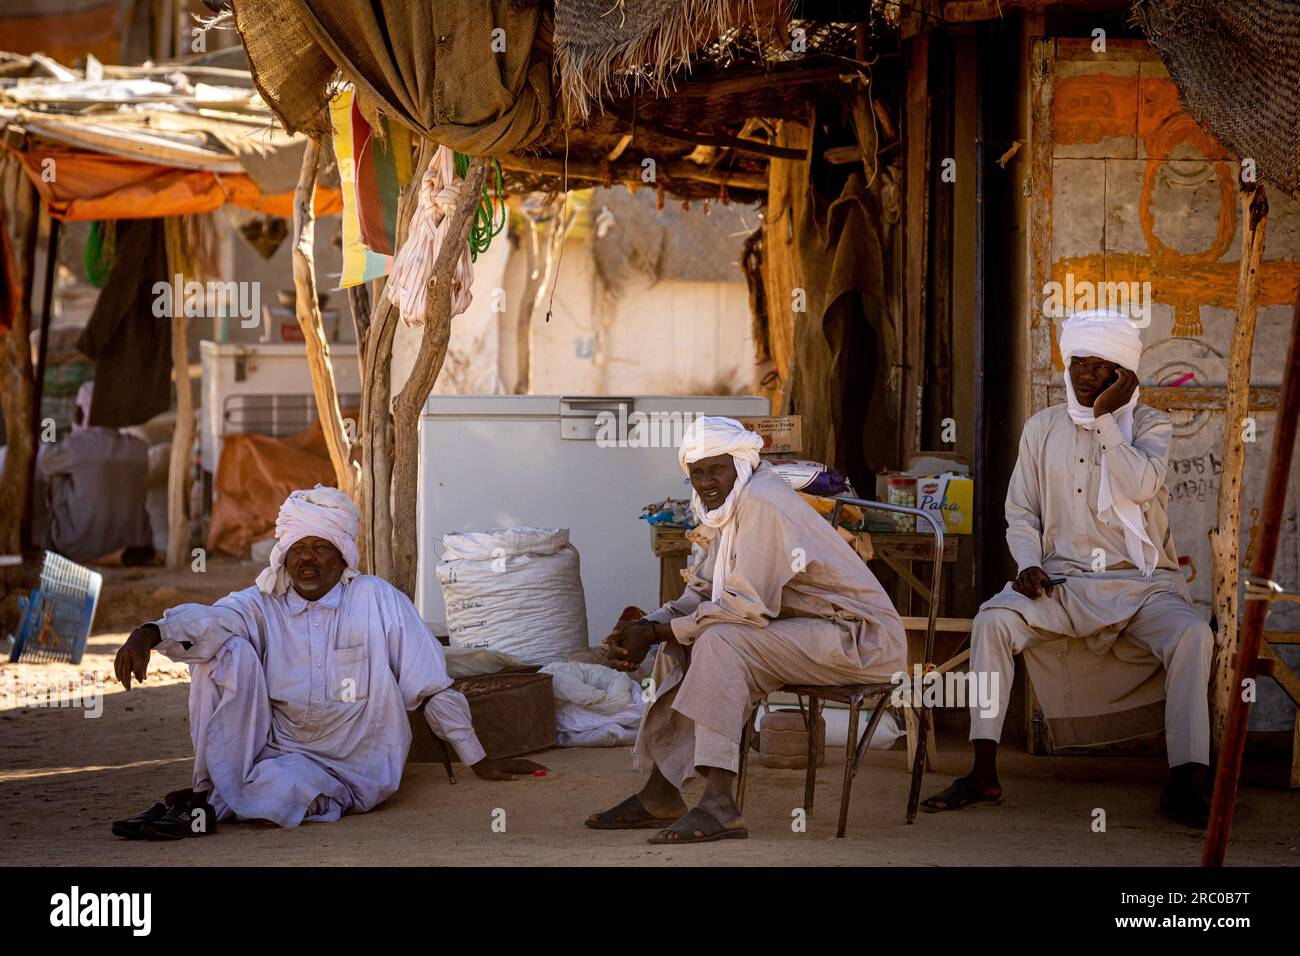 Auf dem ländlichen Markt des Tschad betreiben drei Männer in traditioneller Kleidung und Turbans Handel unter einem rustikalen Schuppen, der die lokale Kultur zeigt. Stockfoto